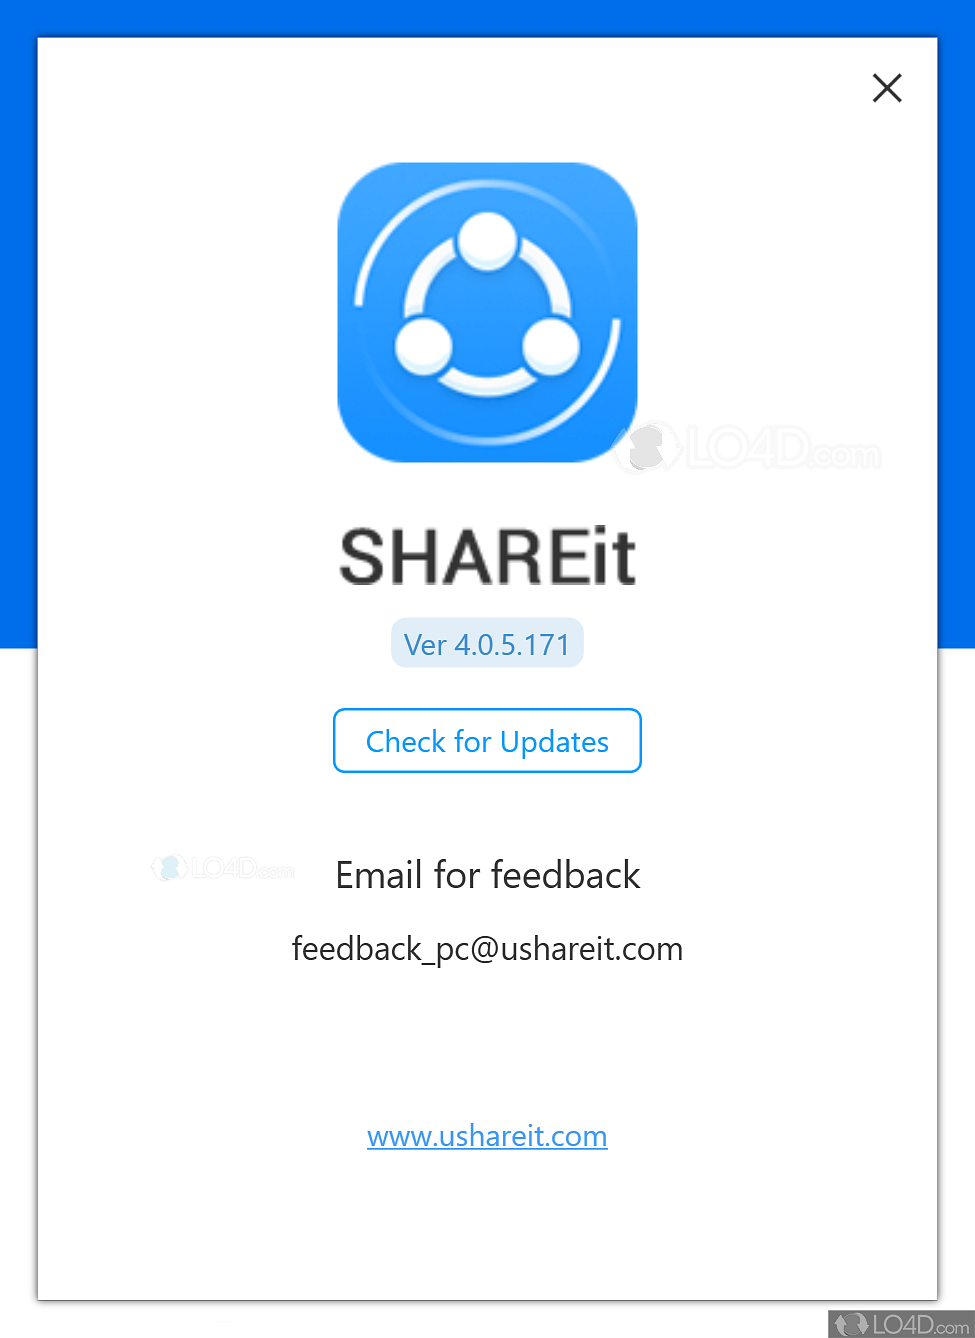 shareit app website